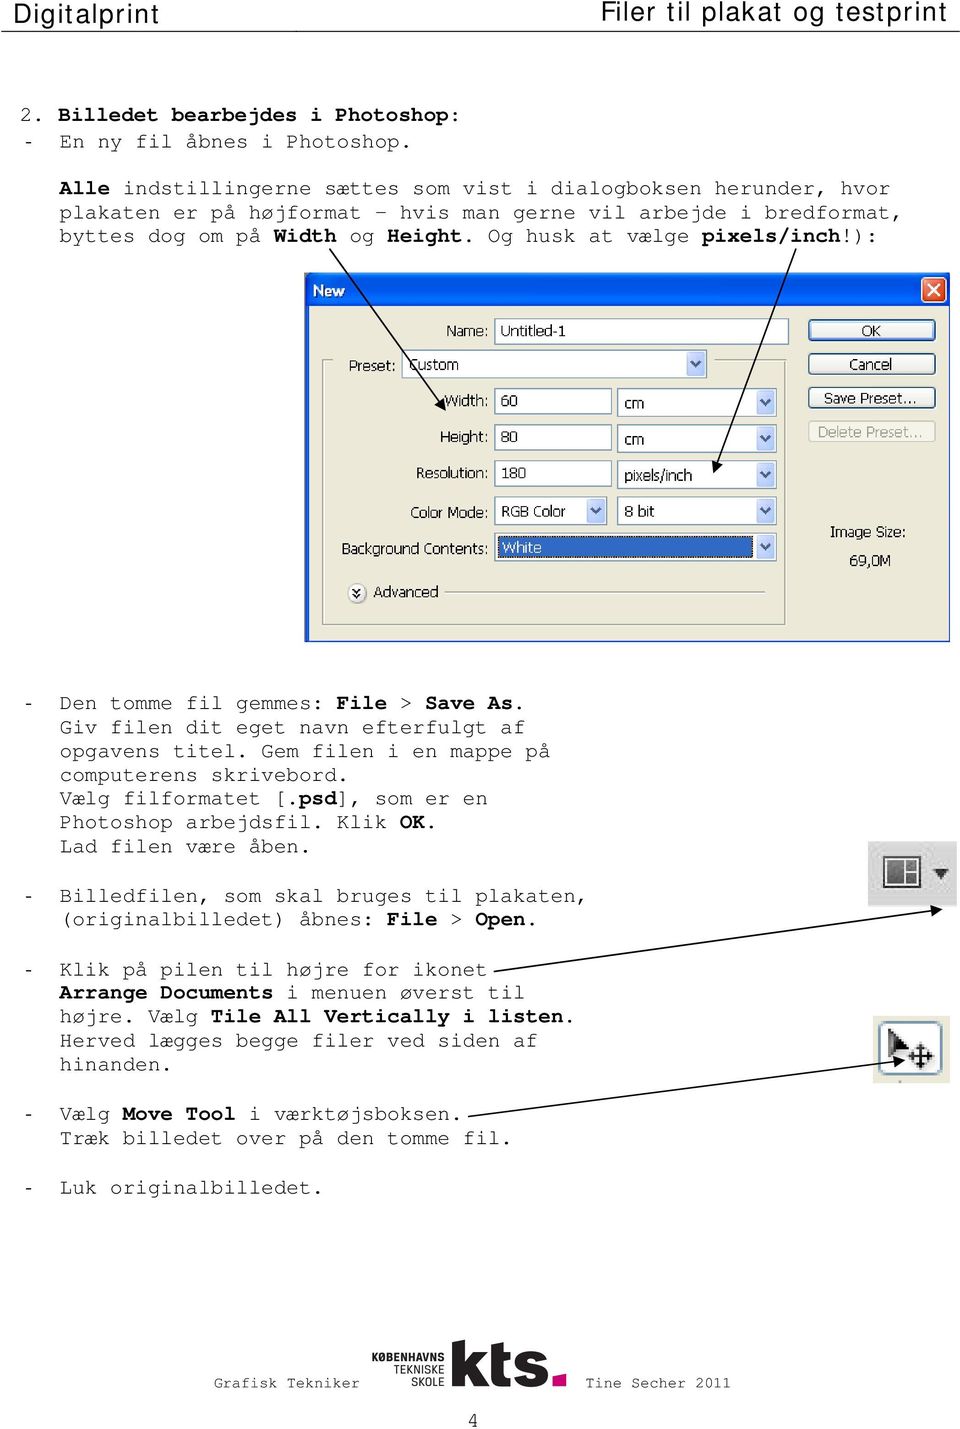 ): - Den tomme fil gemmes: File > Save As. Giv filen dit eget navn efterfulgt af opgavens titel. Gem filen i en mappe på computerens skrivebord. Vælg filformatet [.